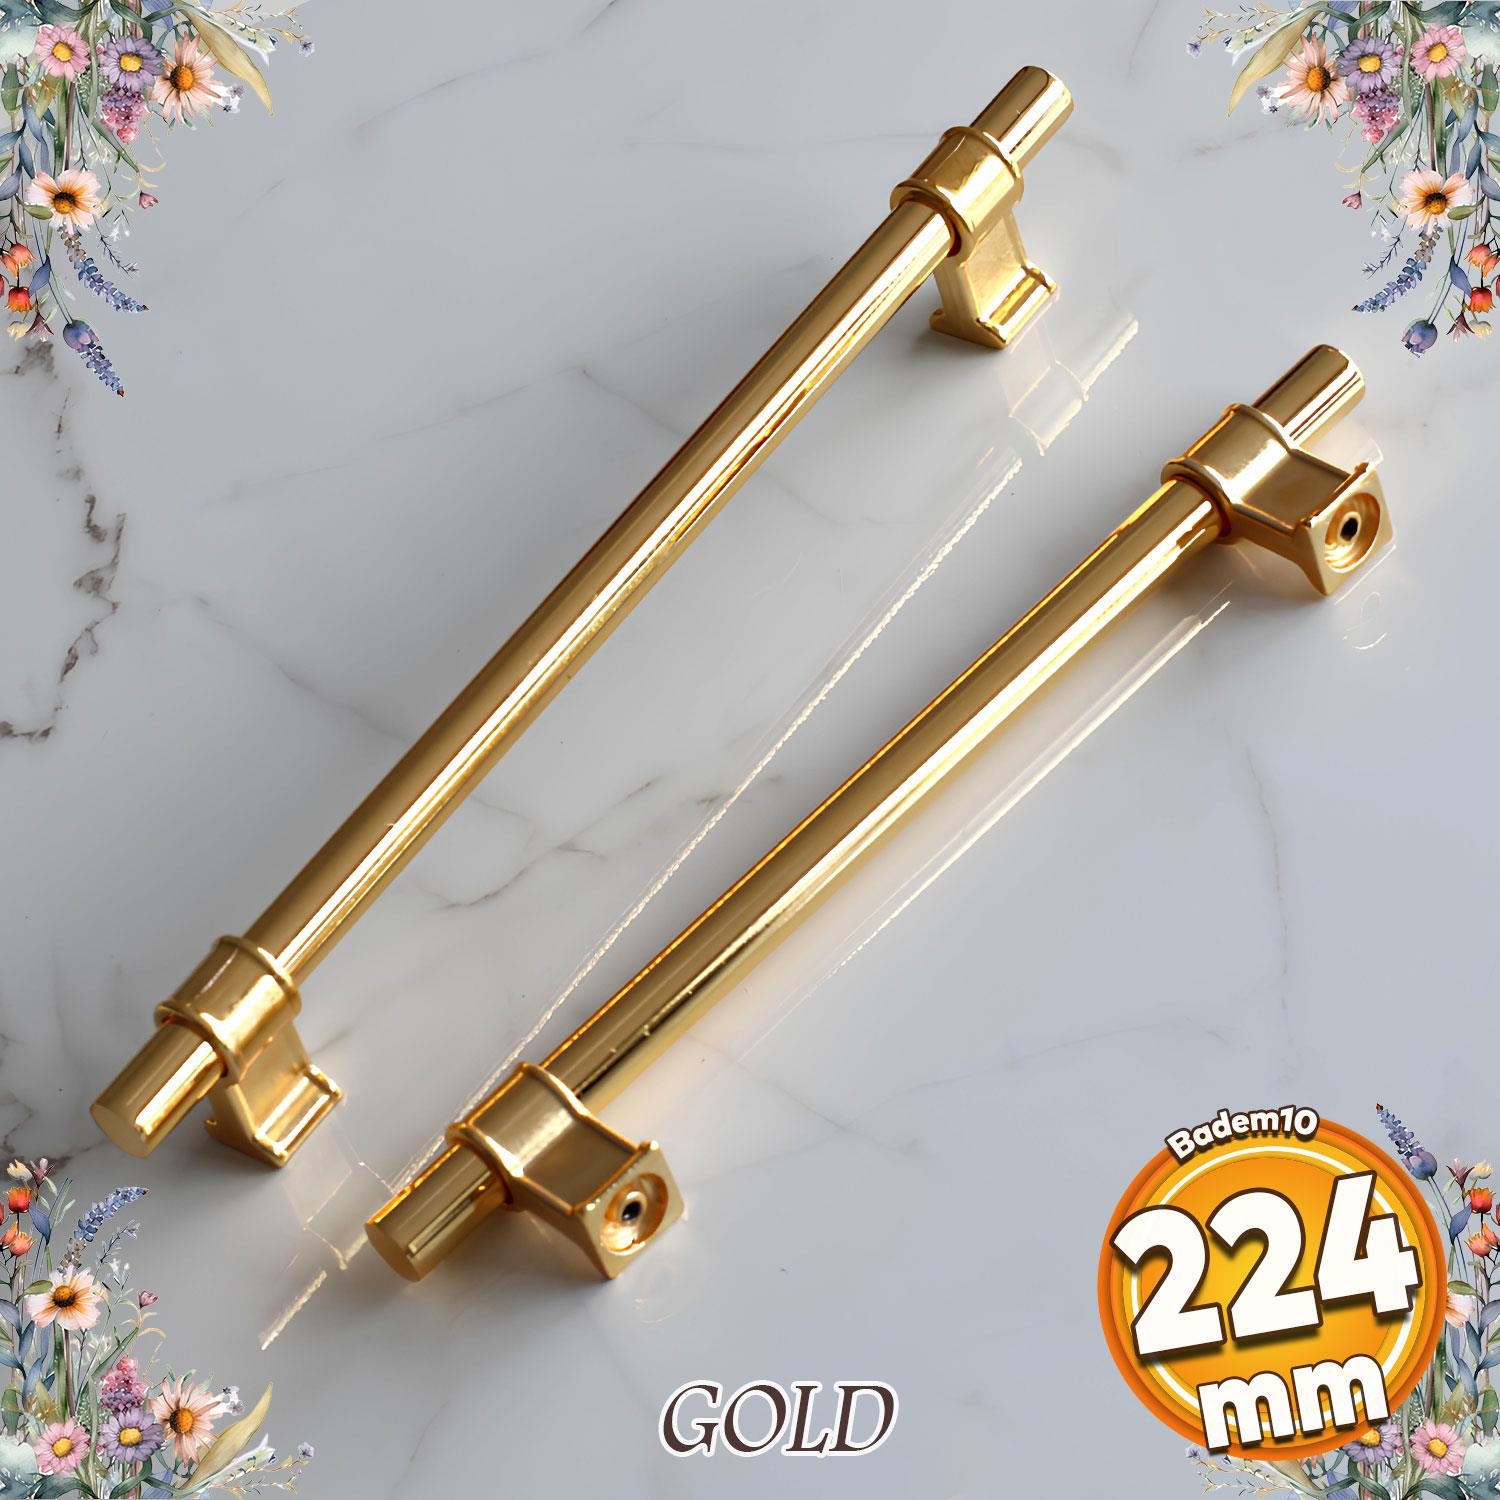 Hisar Altın Gold Düz Metal Kulp 224 mm Mobilya Çekmece Mutfak Dolabı Dolap Kulpları Kulpu Kulbu